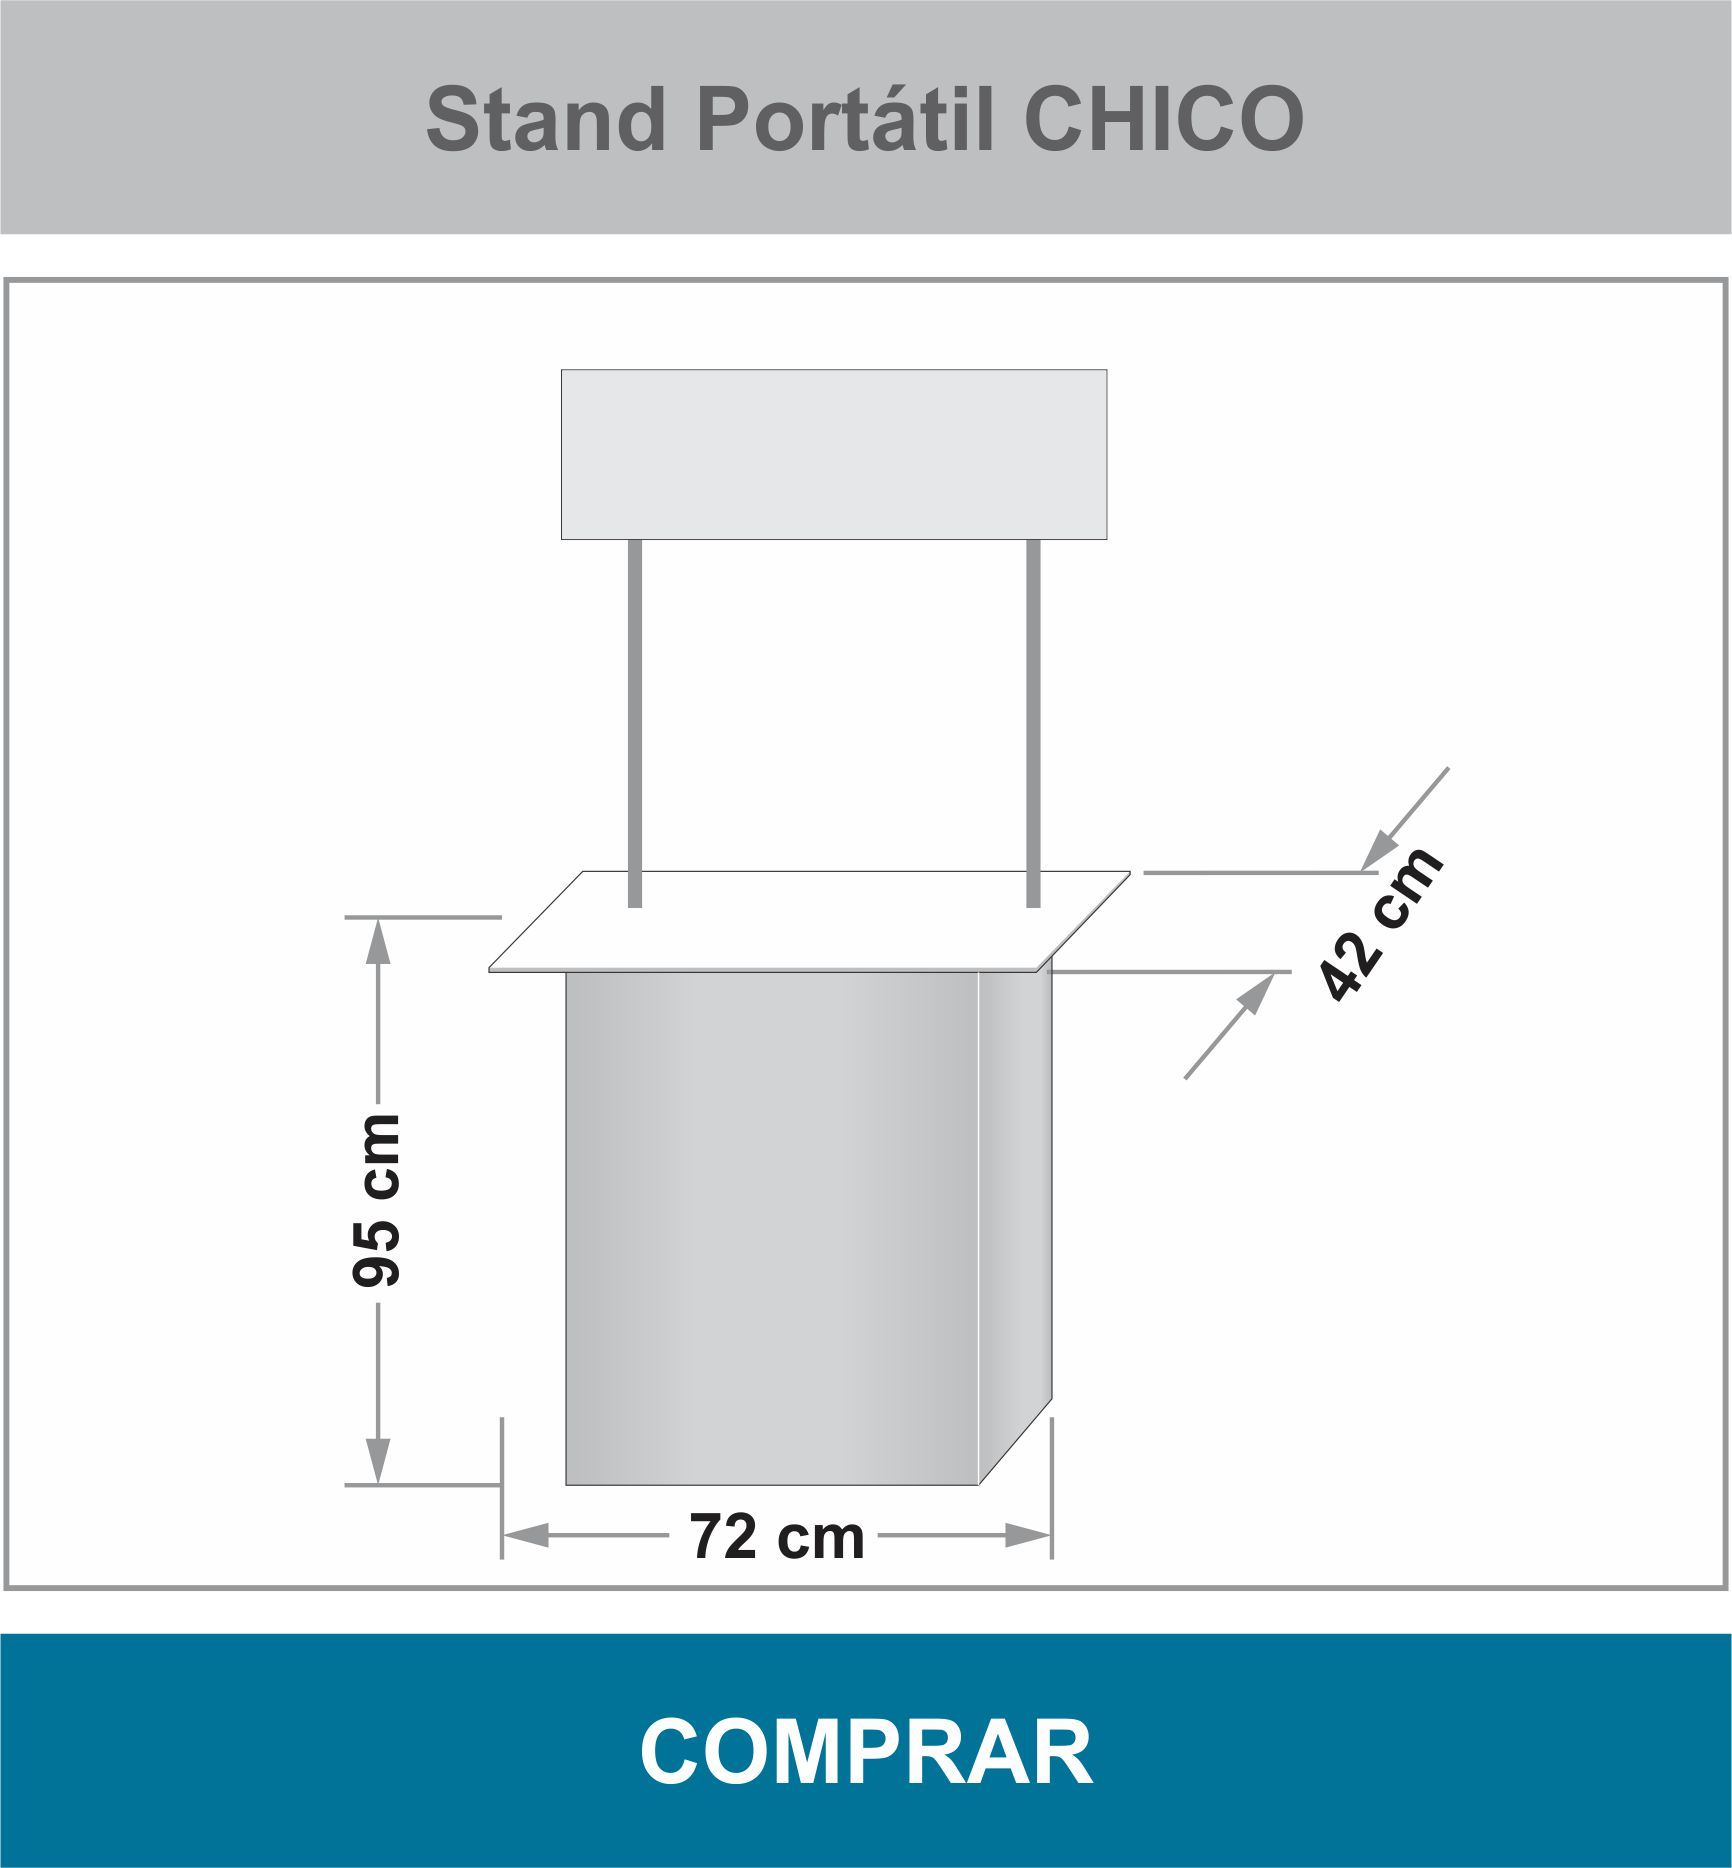 Stand Portátil Chico